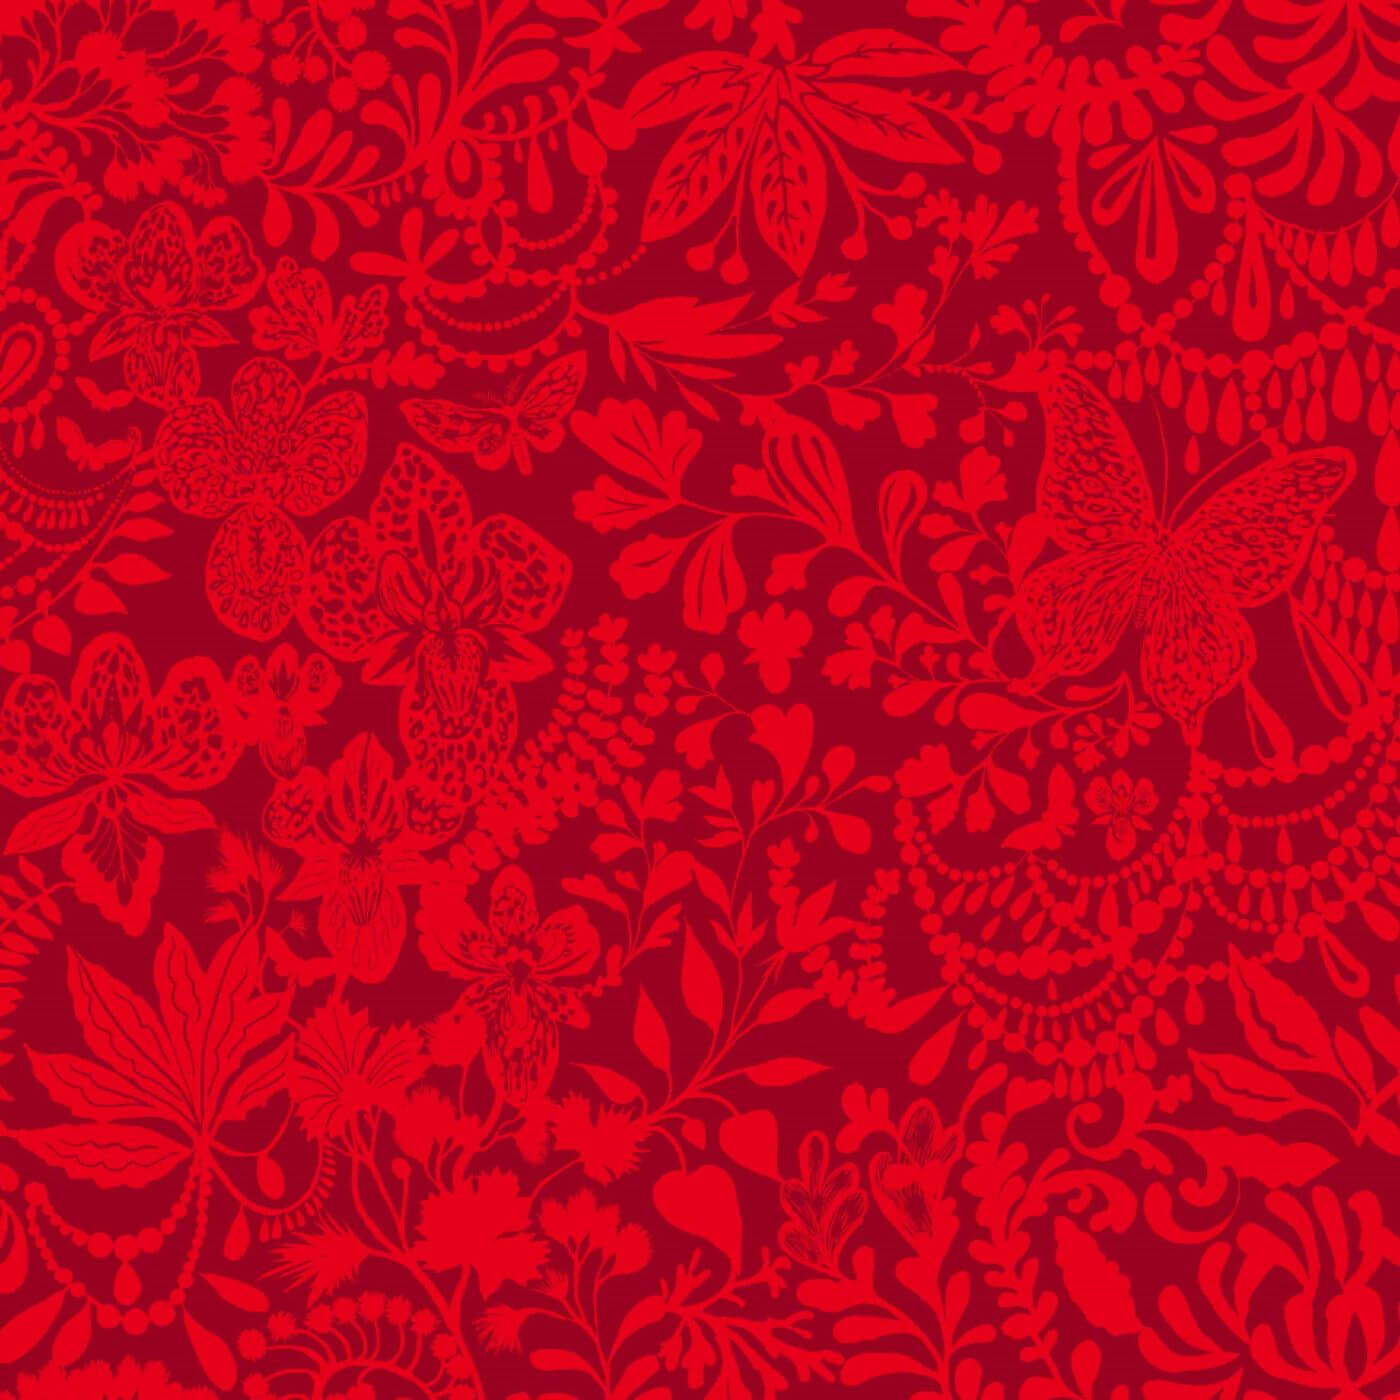 Zasłony we wzory KRUMELUUR. Fragment wzoru zasłony do salonu w kwiaty, liście, motyle w kolorze czerwonym